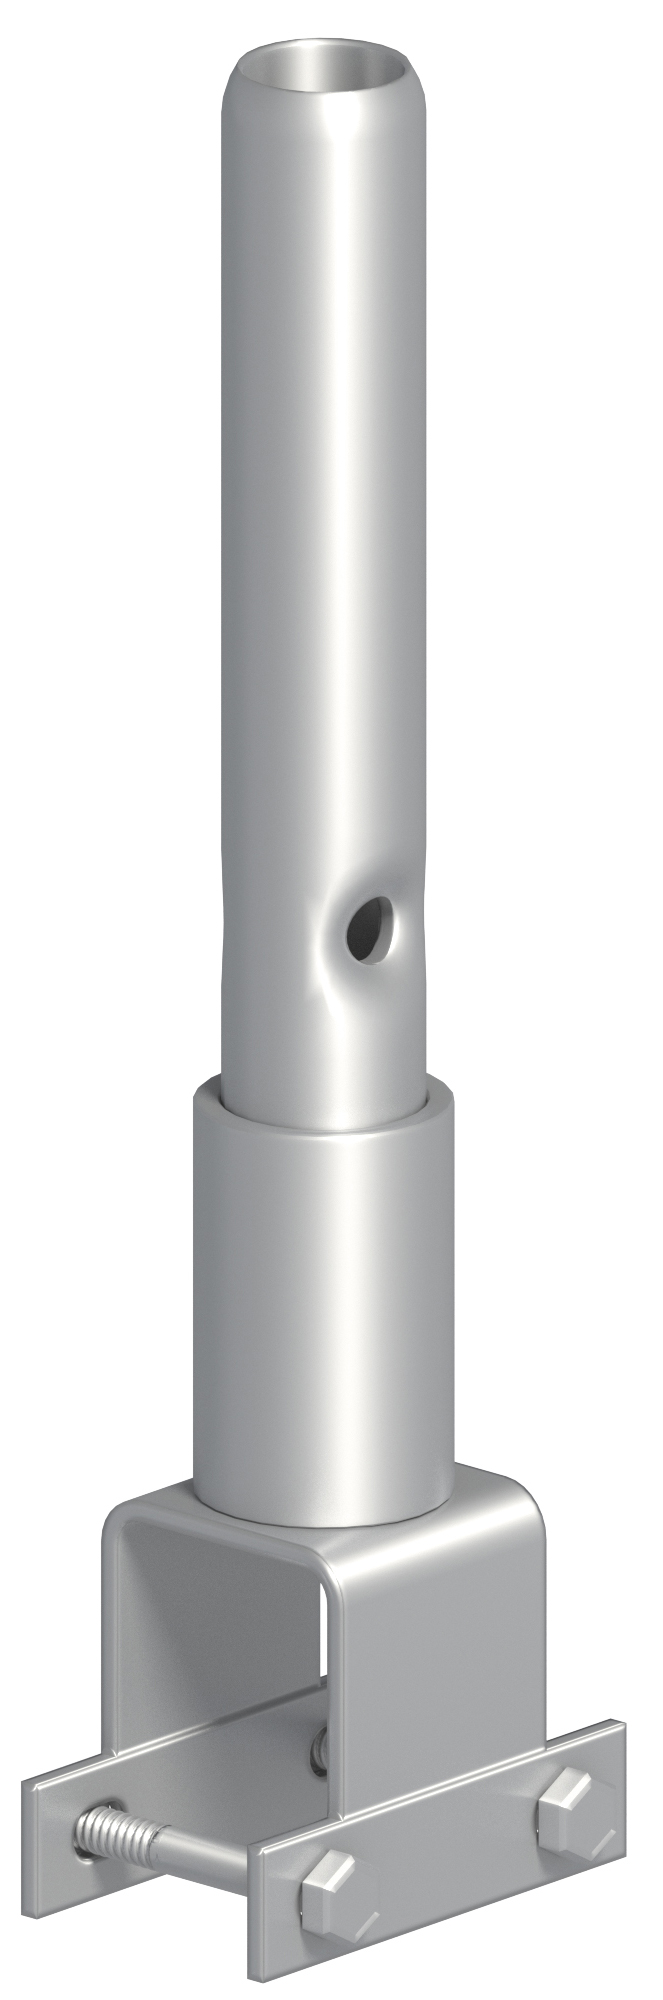 Layher Allround Rohrverbinder U-Profil - Typ 1 Trägeraufsatz mit Rohrverbinder zum Weiterbau auf U-Profil ohne verbaute Aushubsicherung (LG-2656.000) Bild-01